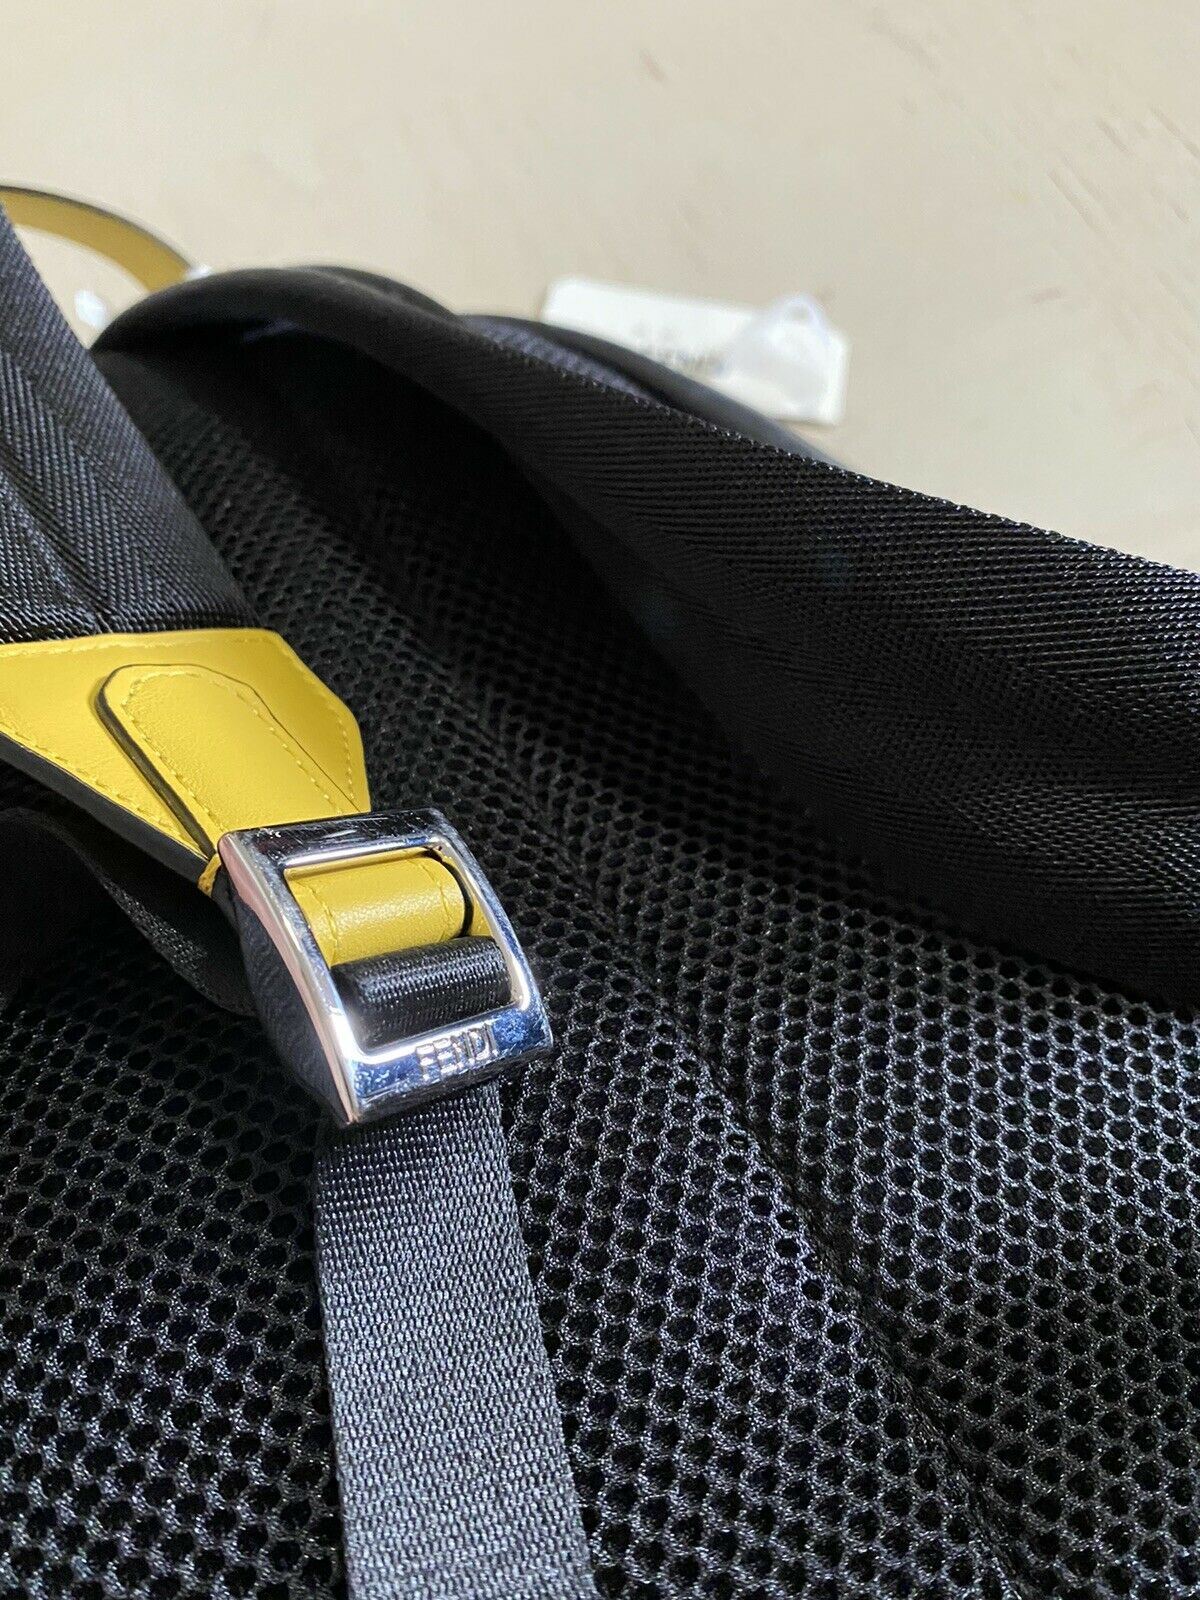 Новый кожаный/нейлоновый рюкзак Fendi Monster Eye за $1790, черный, Италия